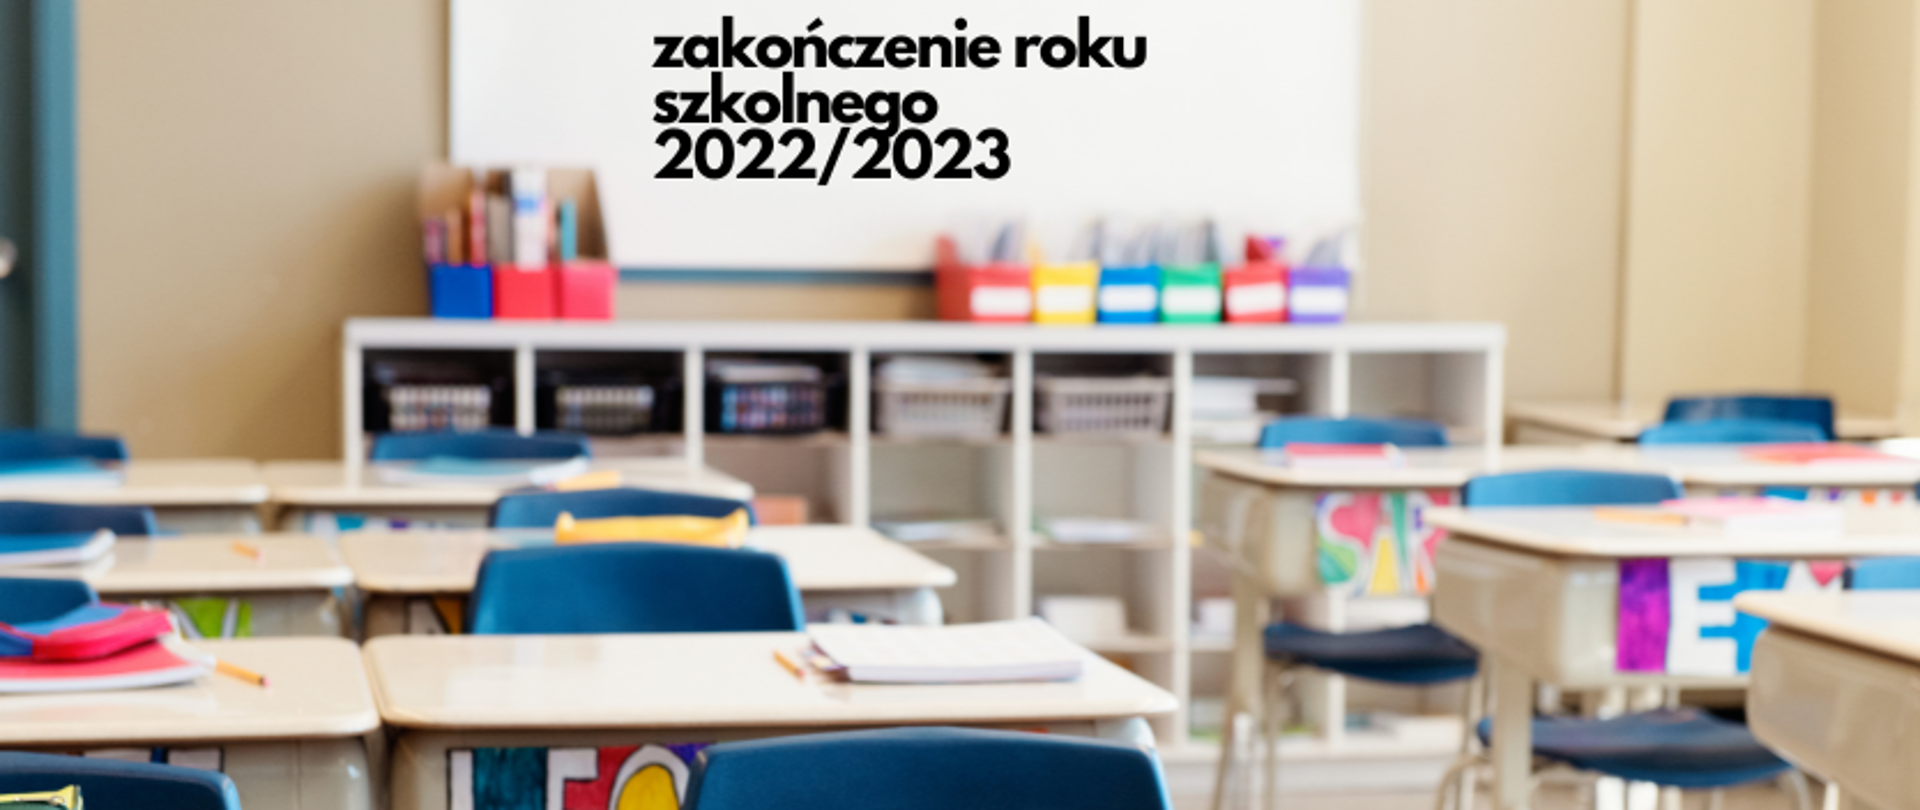 grafika: zdjęcie pustej klasy szkolnej. Na zdjęciu kolorowe ławki i niebieskie krzesełka, z tyłu sali lekcyjnej regały z kolorowymi przyborami szkolnymi. U góry zdjęcia napis zakończenie roku szkolnego 2022/2023